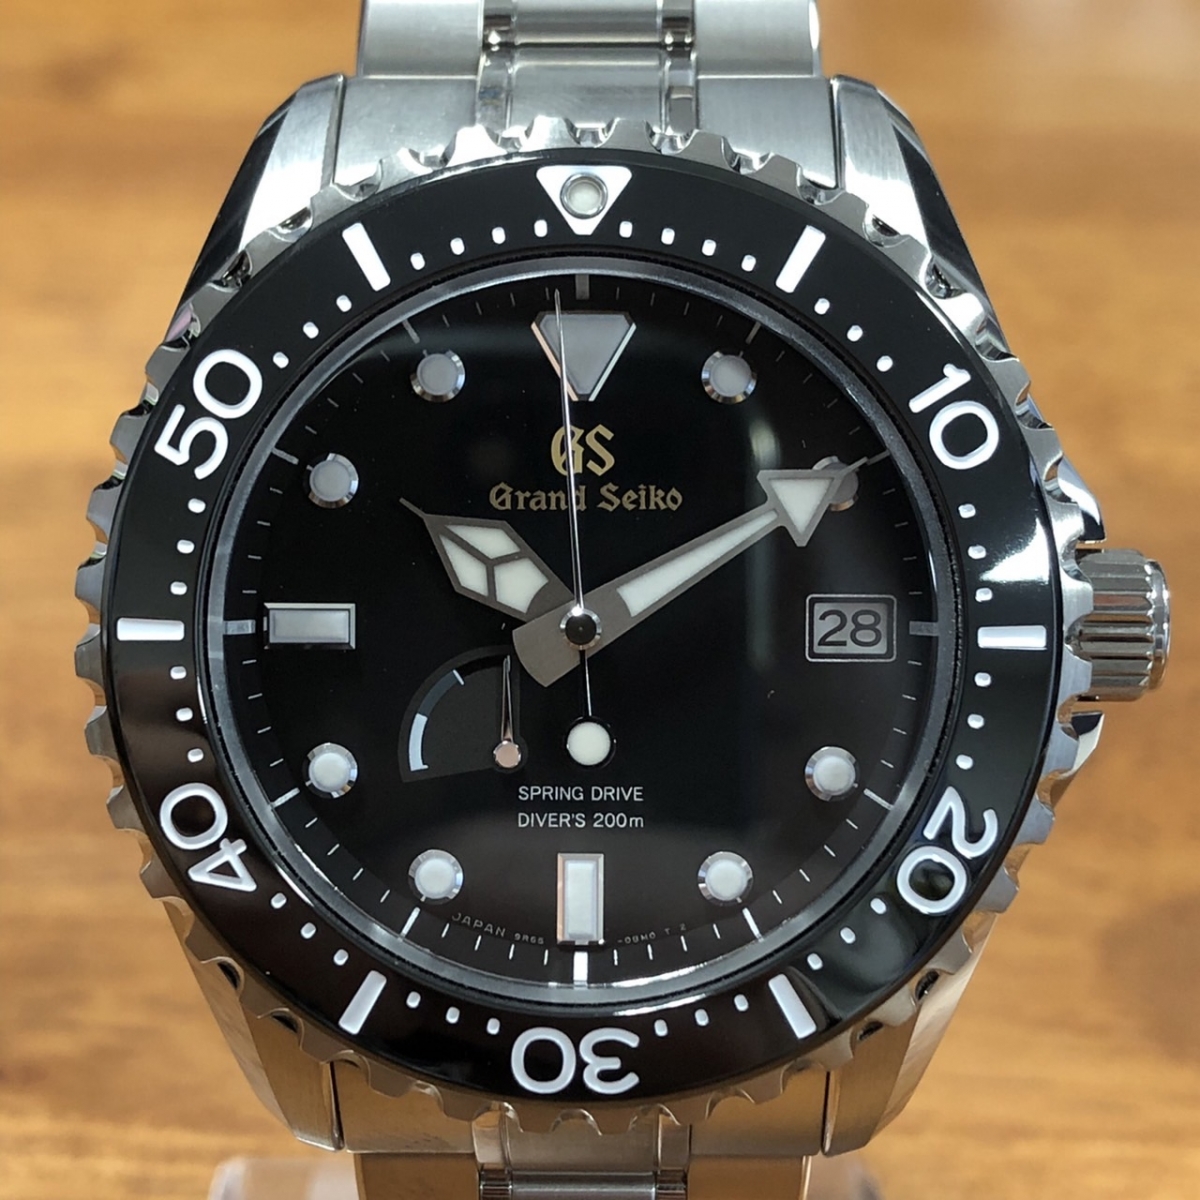 グランドセイコーのSBGA231 マスターショップ限定モデル スプリングドライブダイバーズウォッチ・腕時計の買取実績です。